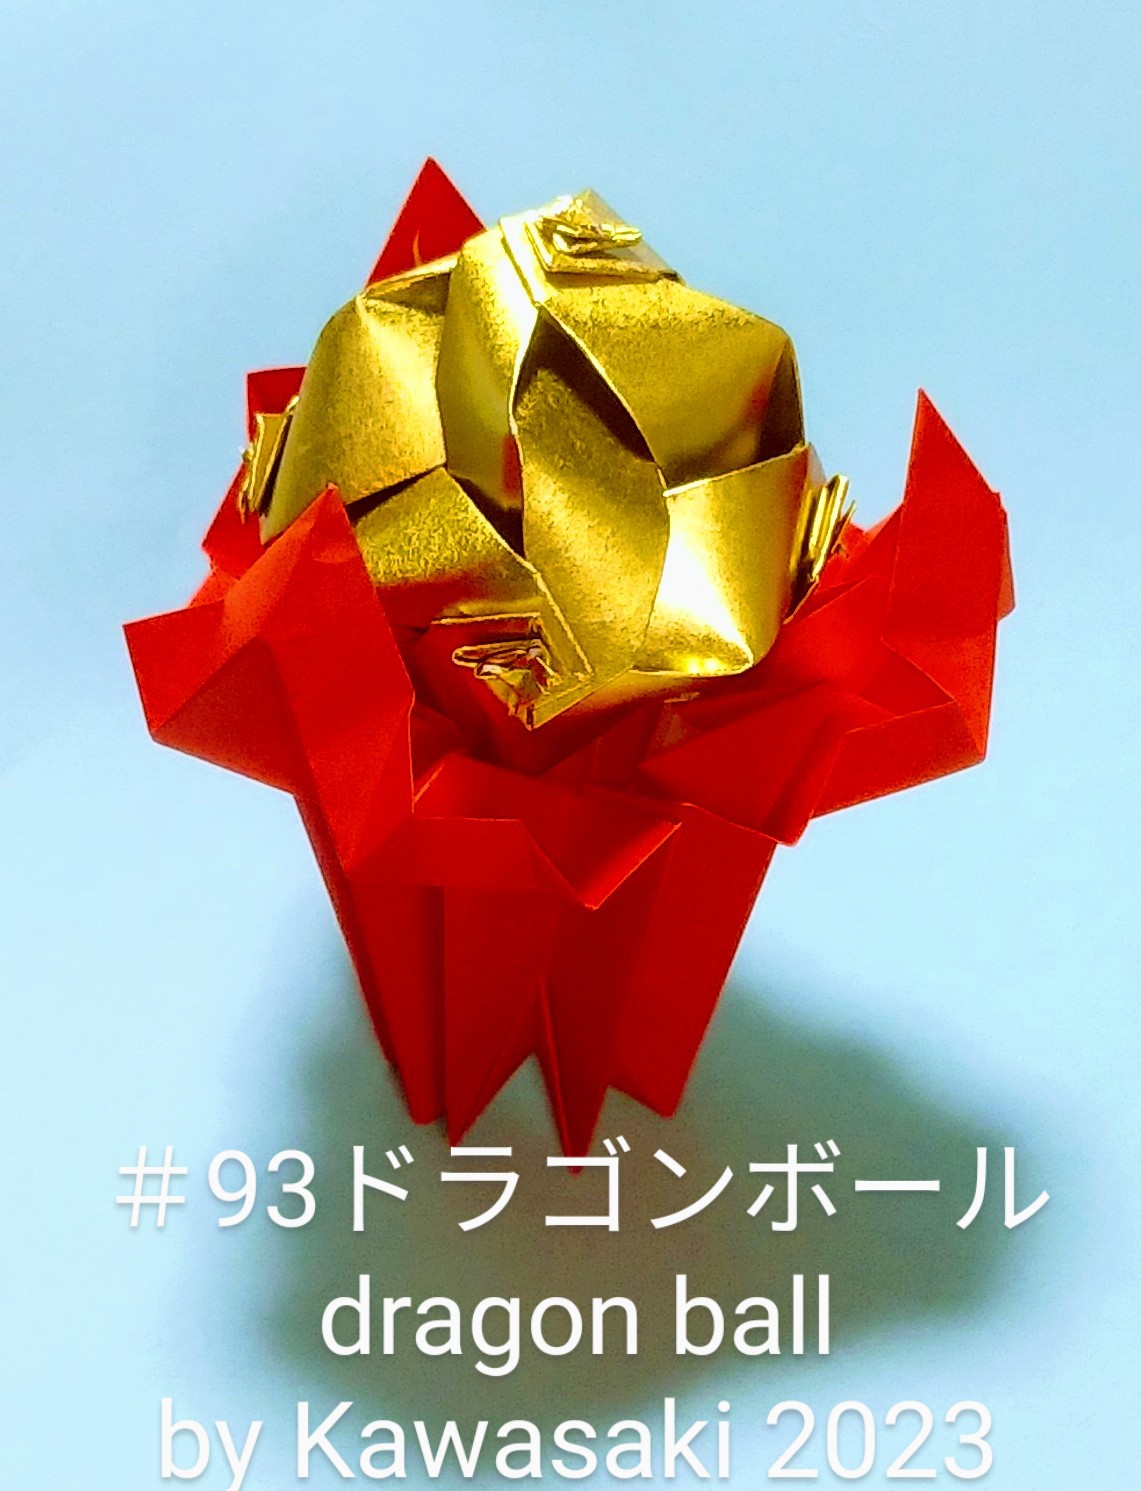 2023/10/08(Sun) 13:56「＃93ドラゴンボール dragon ball(作2023年10月8日13:41) 」川崎敏和 T.Kawasaki
（創作者 Author：川崎敏和 T.Kawasaki,　製作者 Folder：川崎敏和 T.Kawasaki ,　出典 Source：2023年川崎敏和折り紙キット＃93）
 ＃92の宝珠を金色の【うず玉】にしました。7.5cmで折ることで小さくなって、爪三本がわかりやすくなりました。